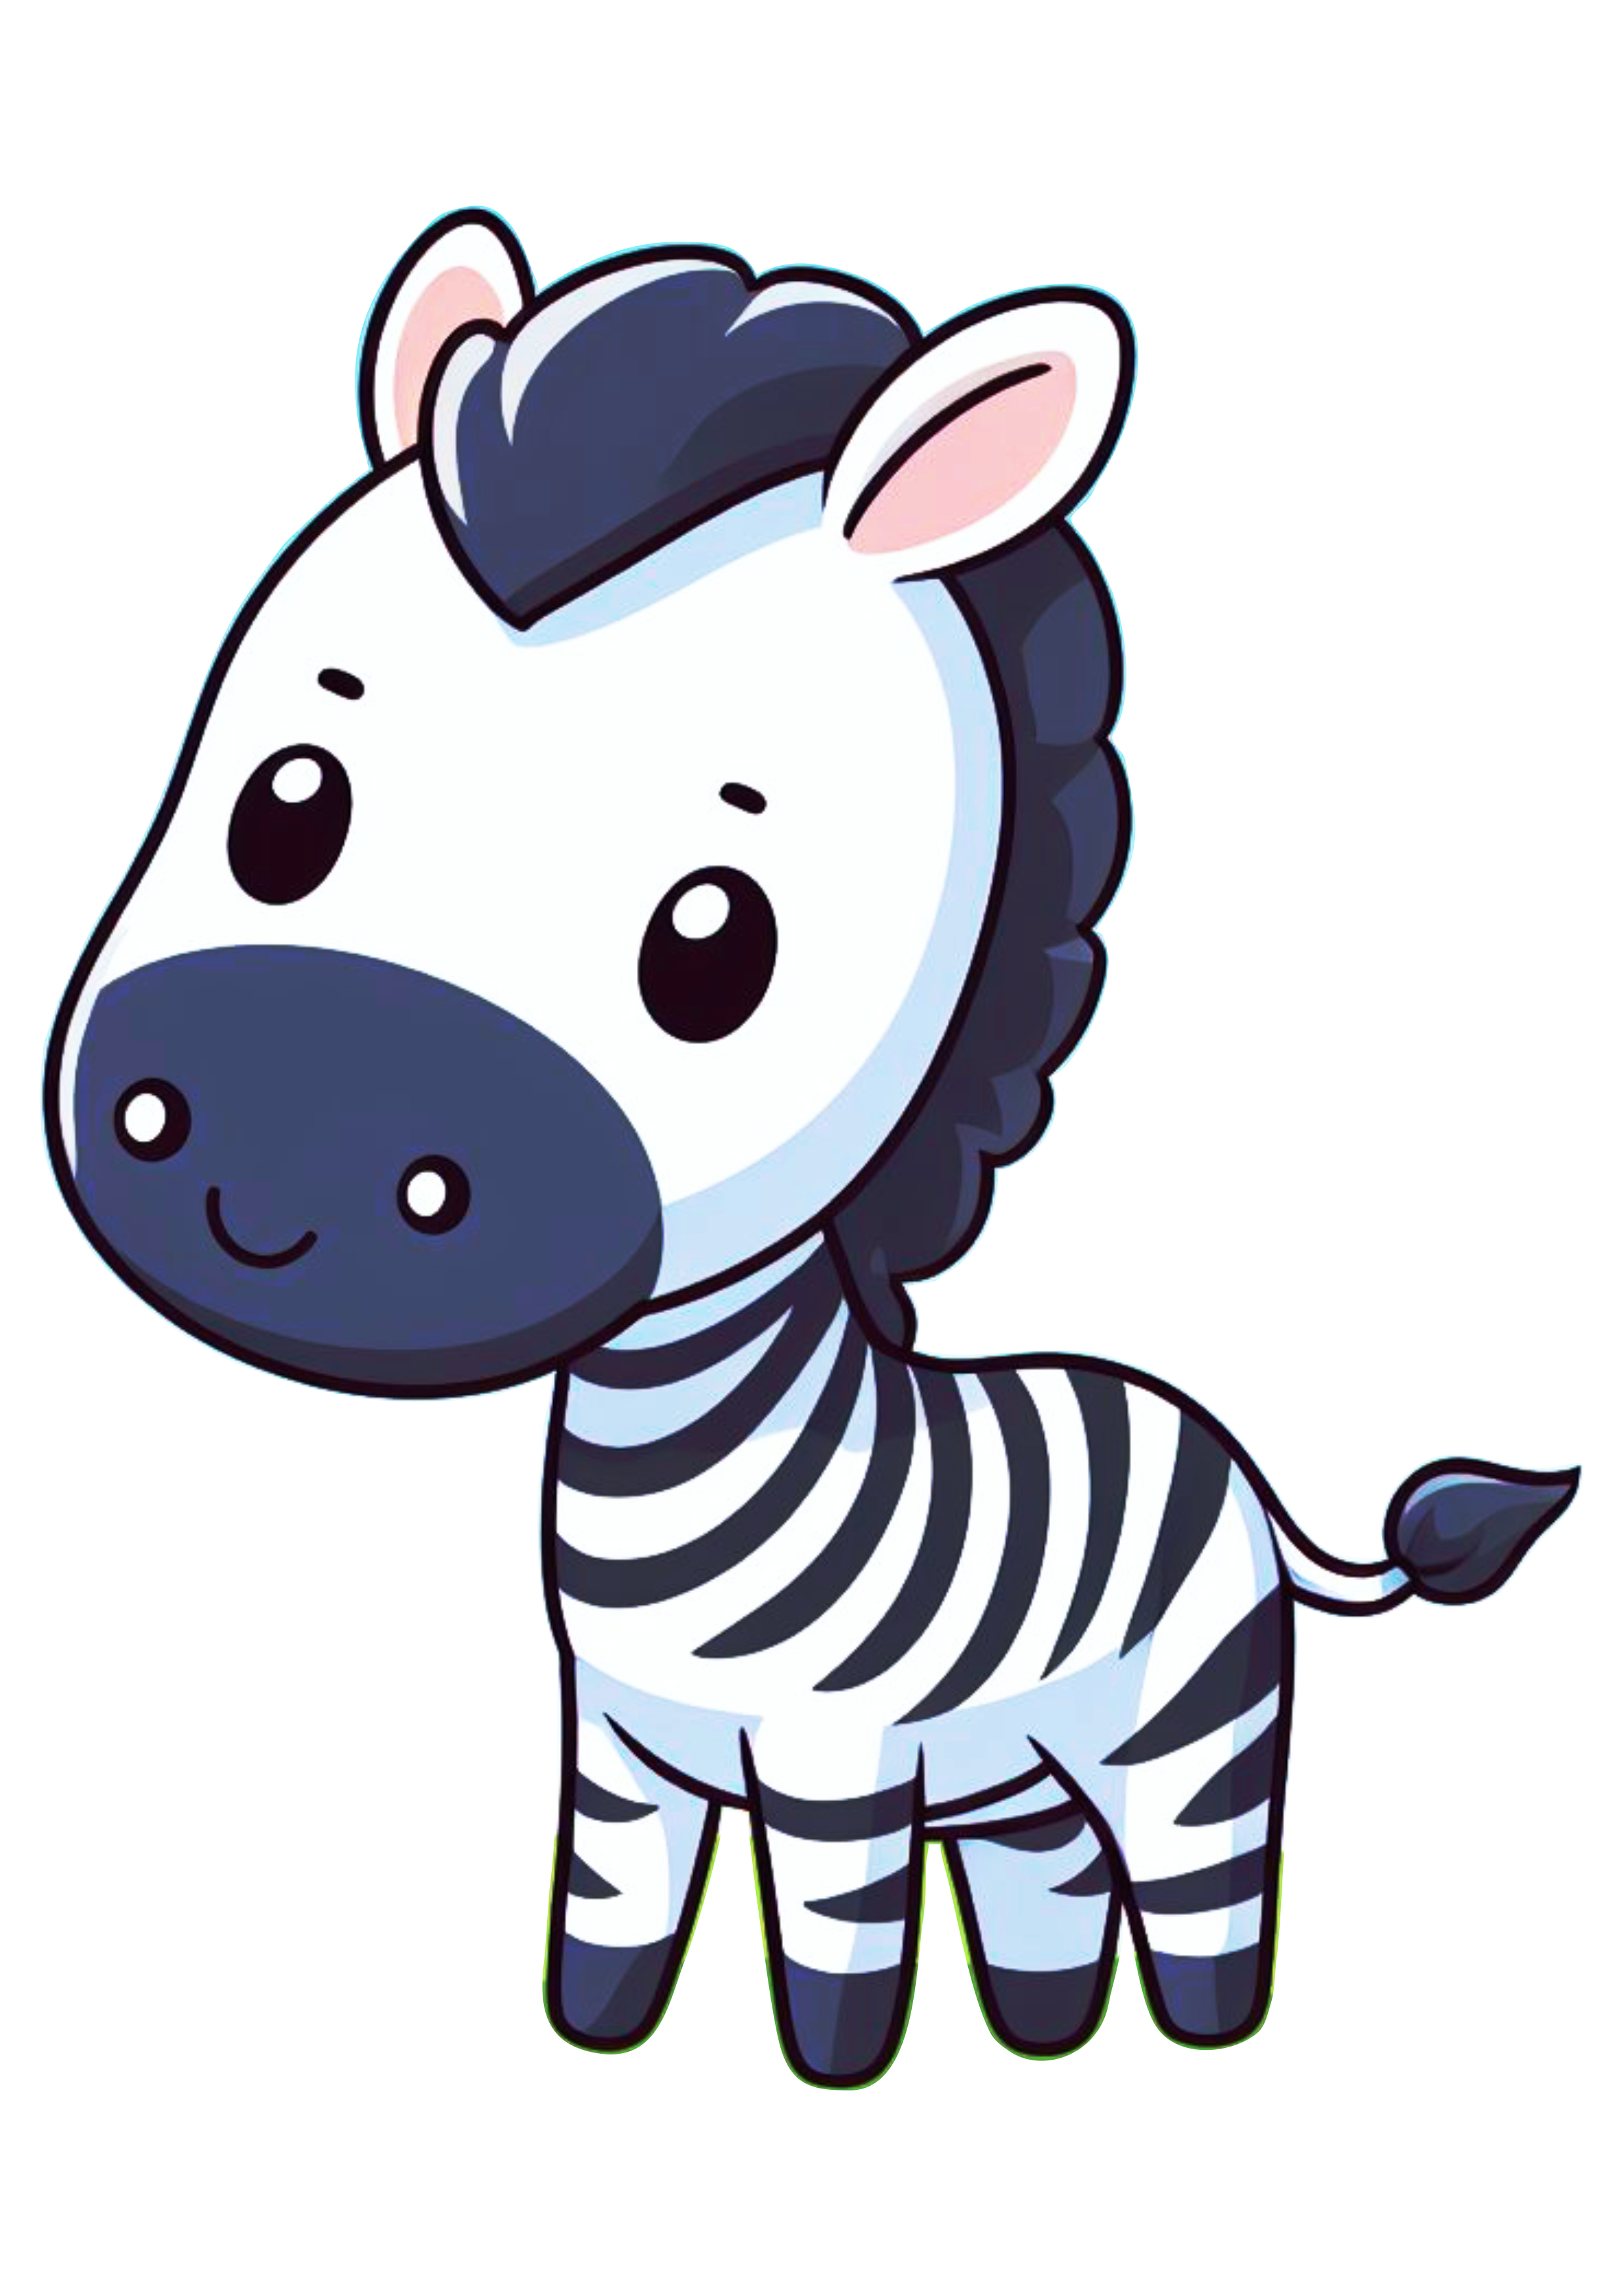 Animais do safari png zebra desenho simples fundo transparente para designer png